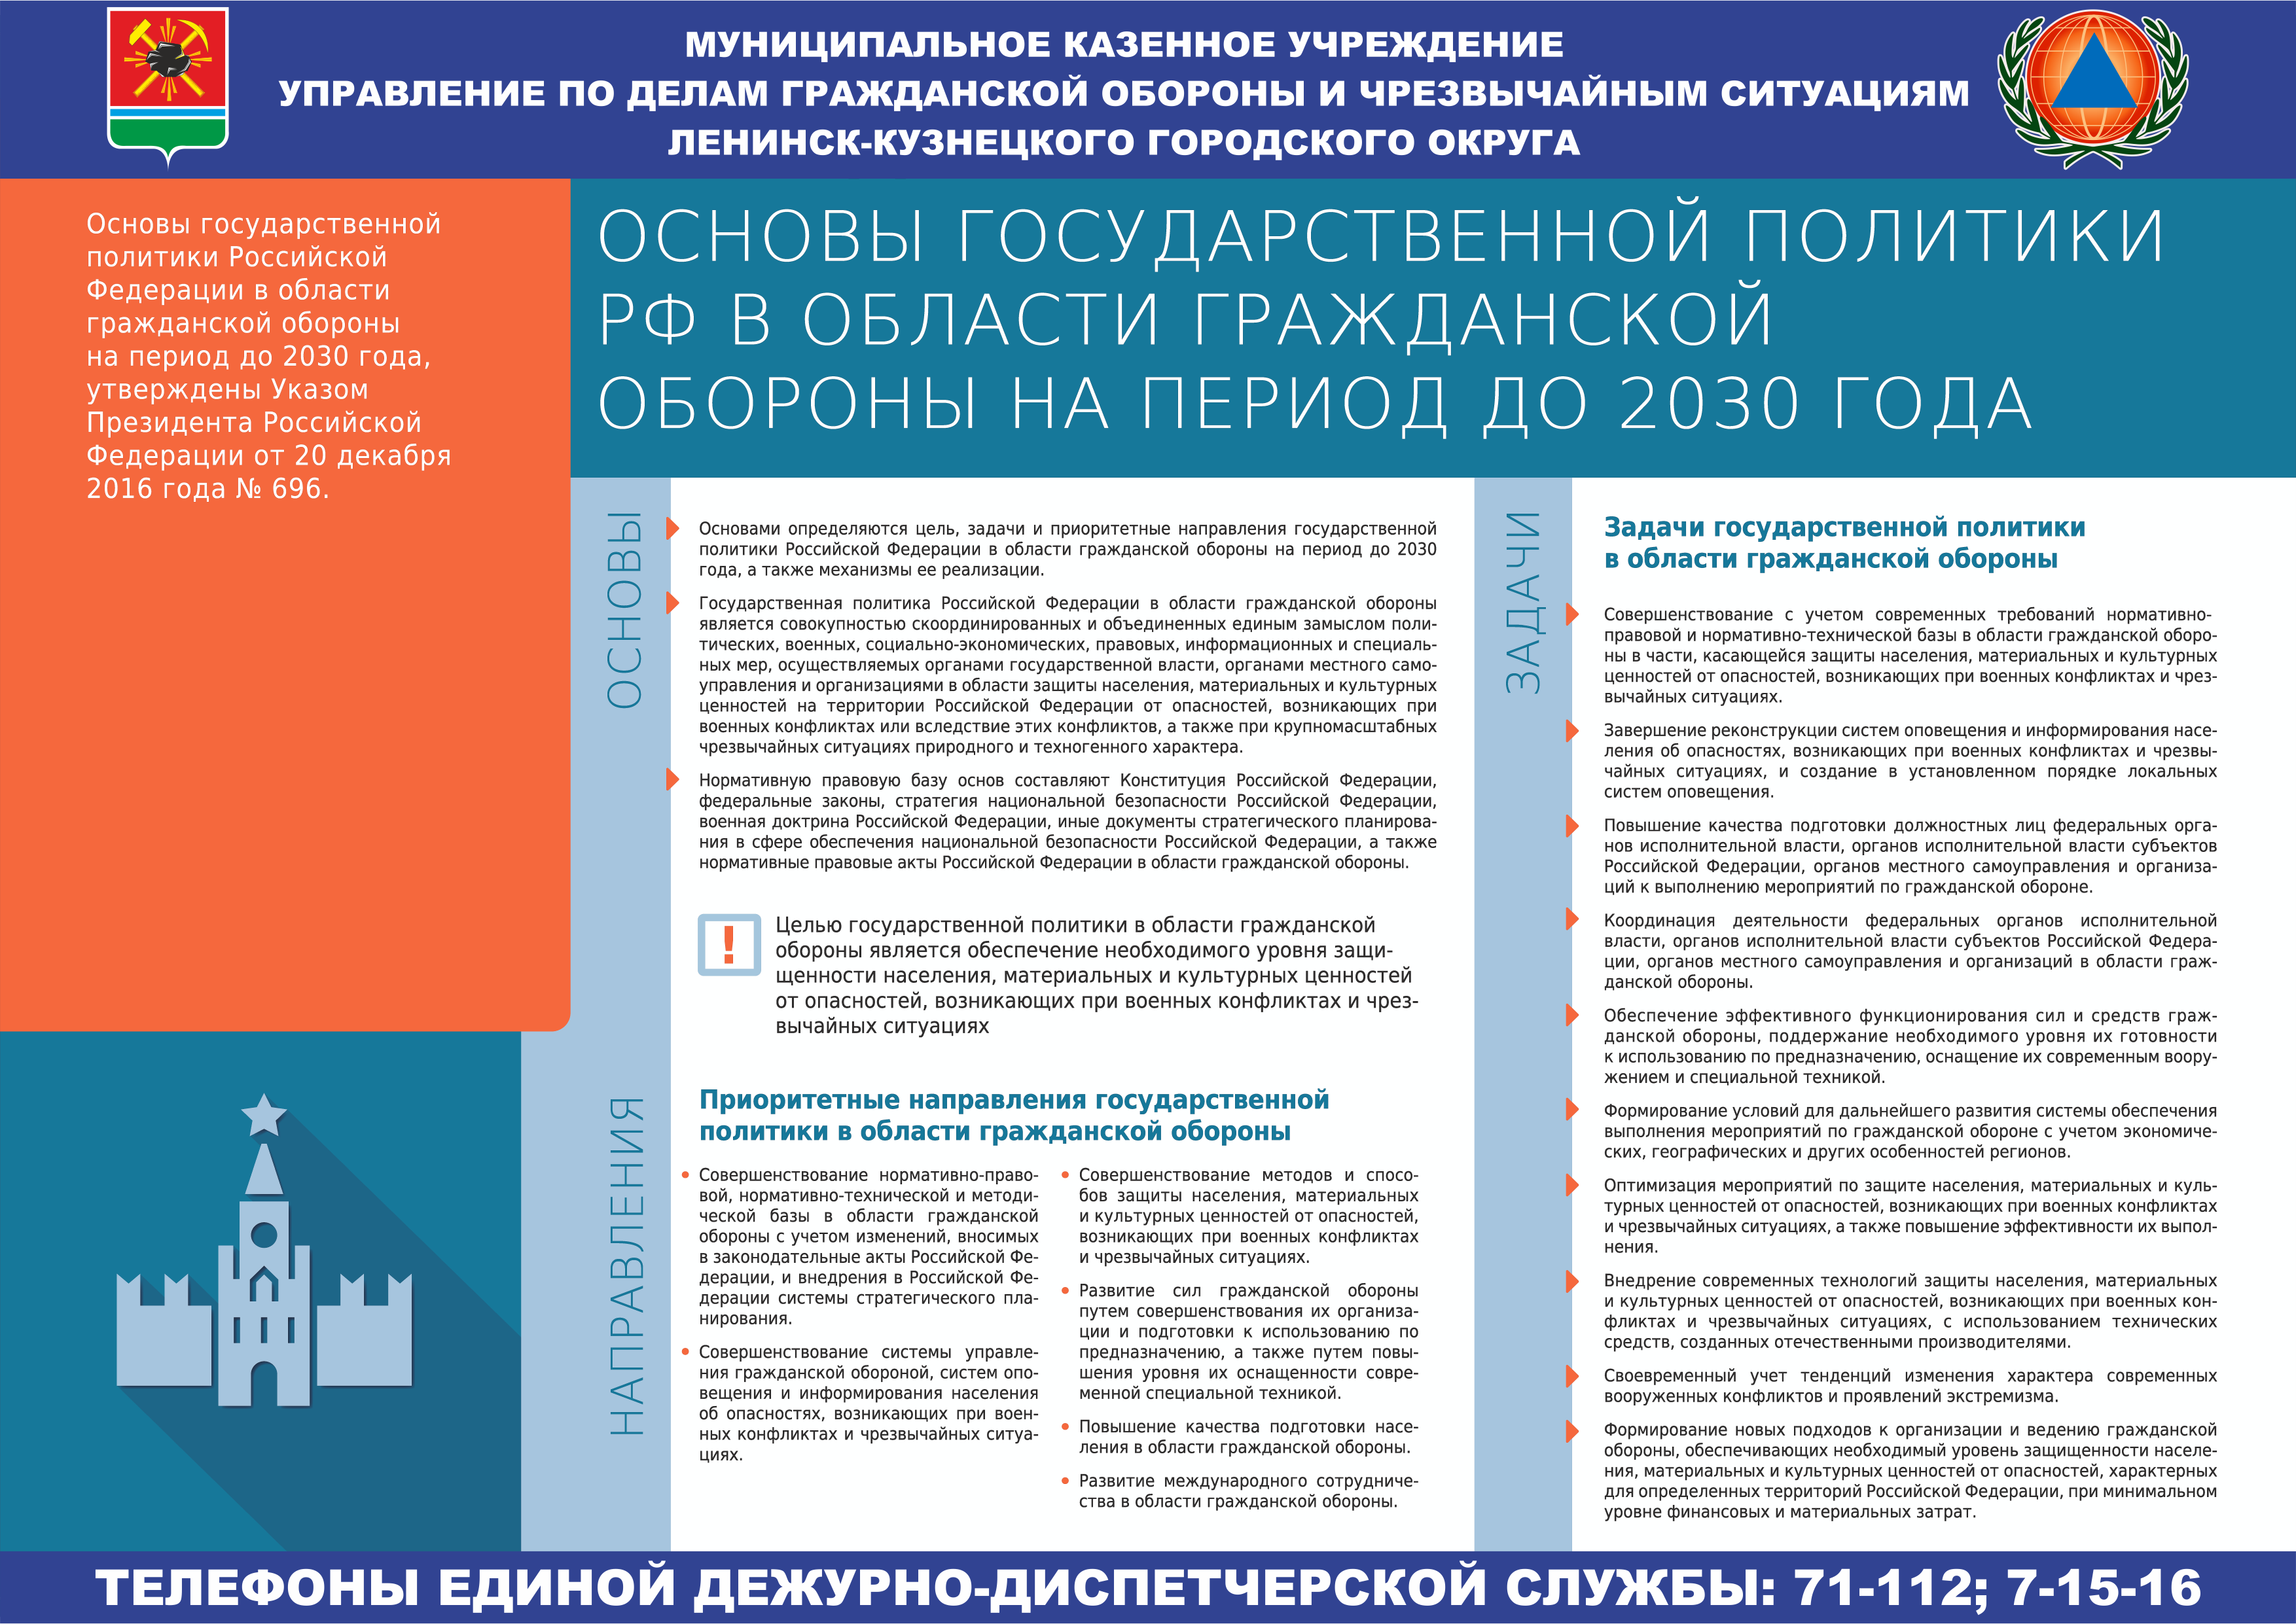 Основы гос.политики РФ в области ГО до 2030